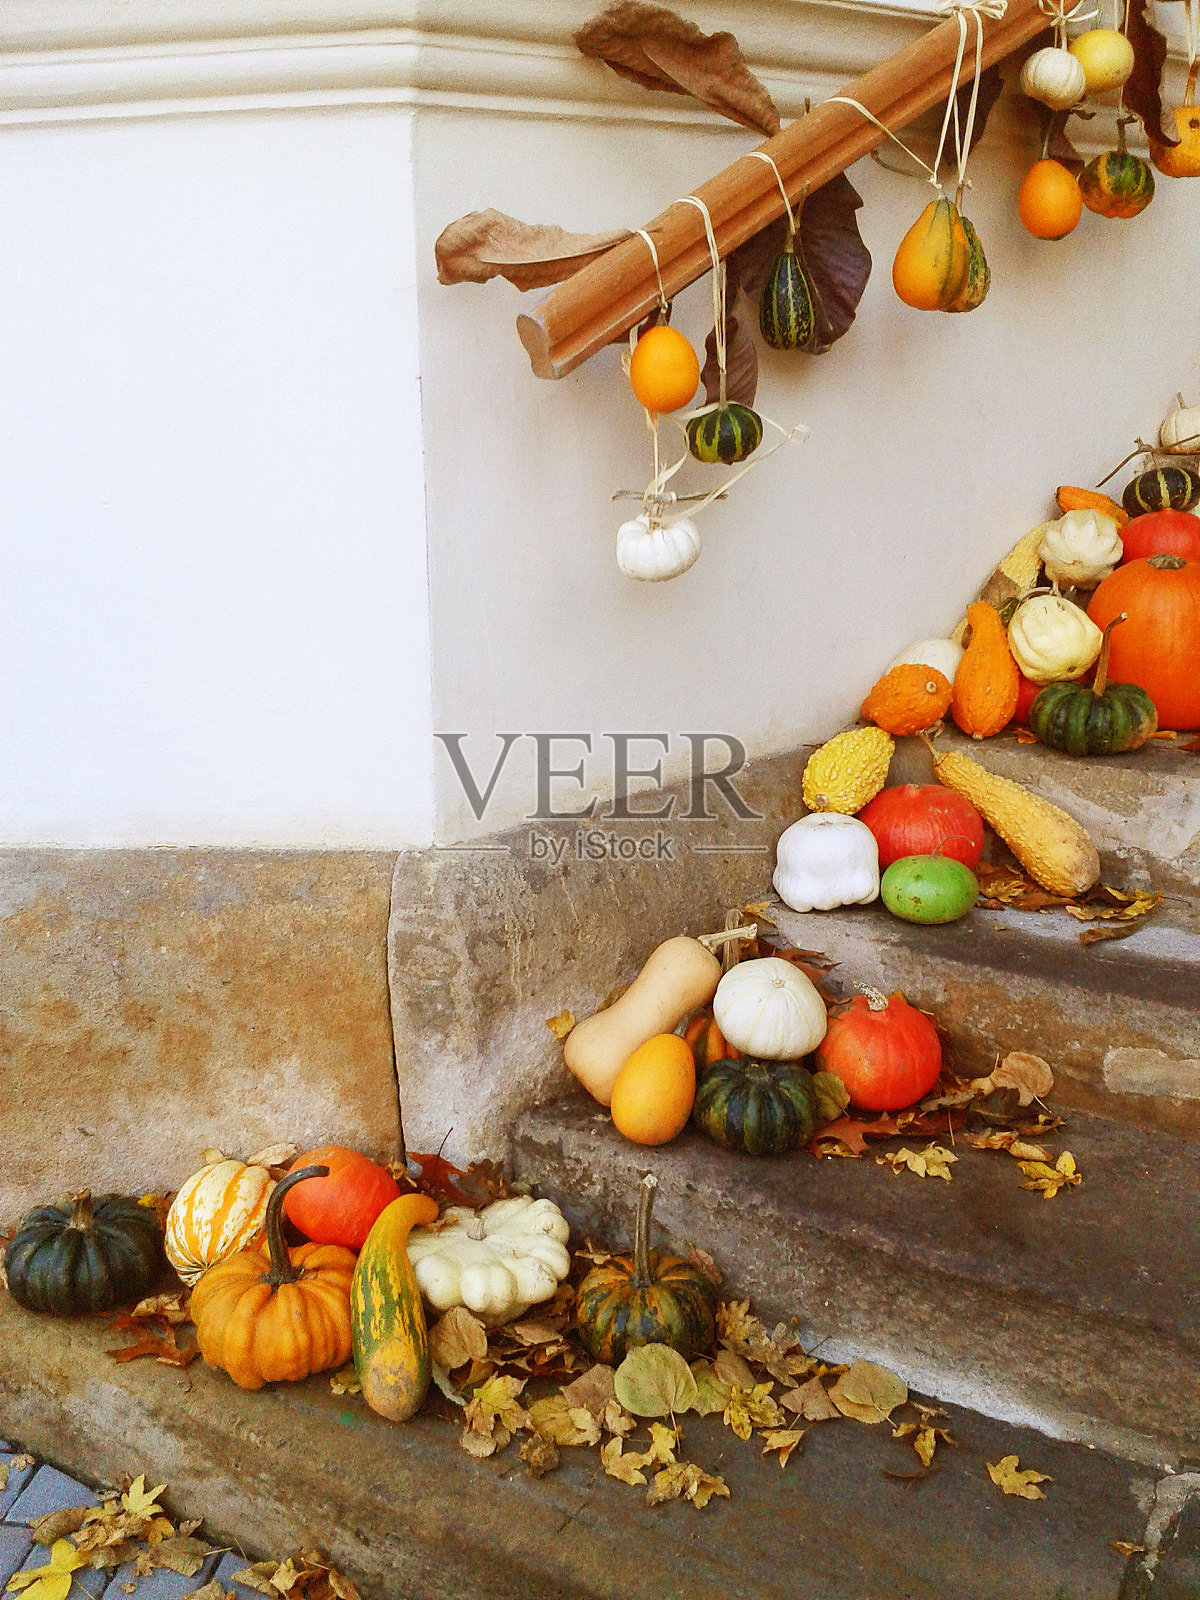 秋天的楼梯装饰照片摄影图片